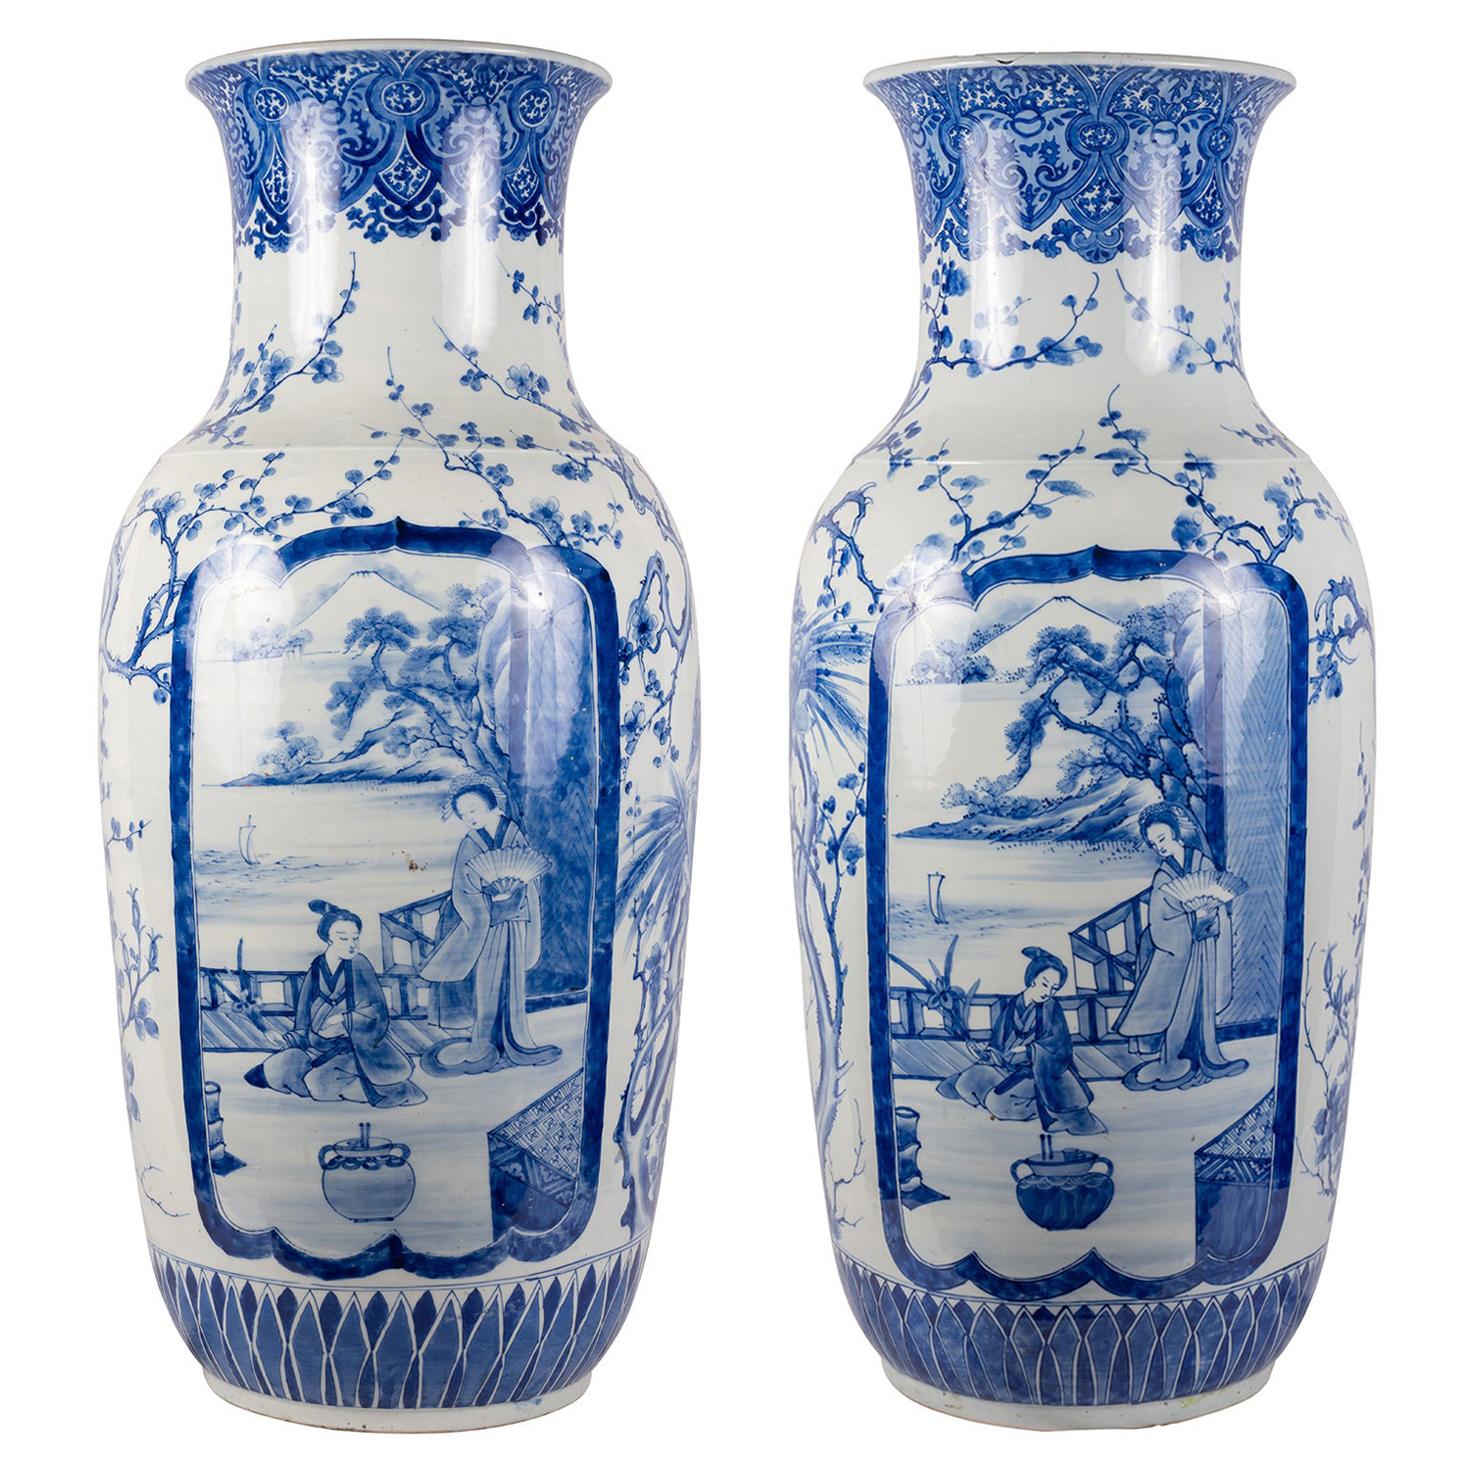 Großes Paar japanischer blau-weißer Vasen des 19. Jahrhunderts